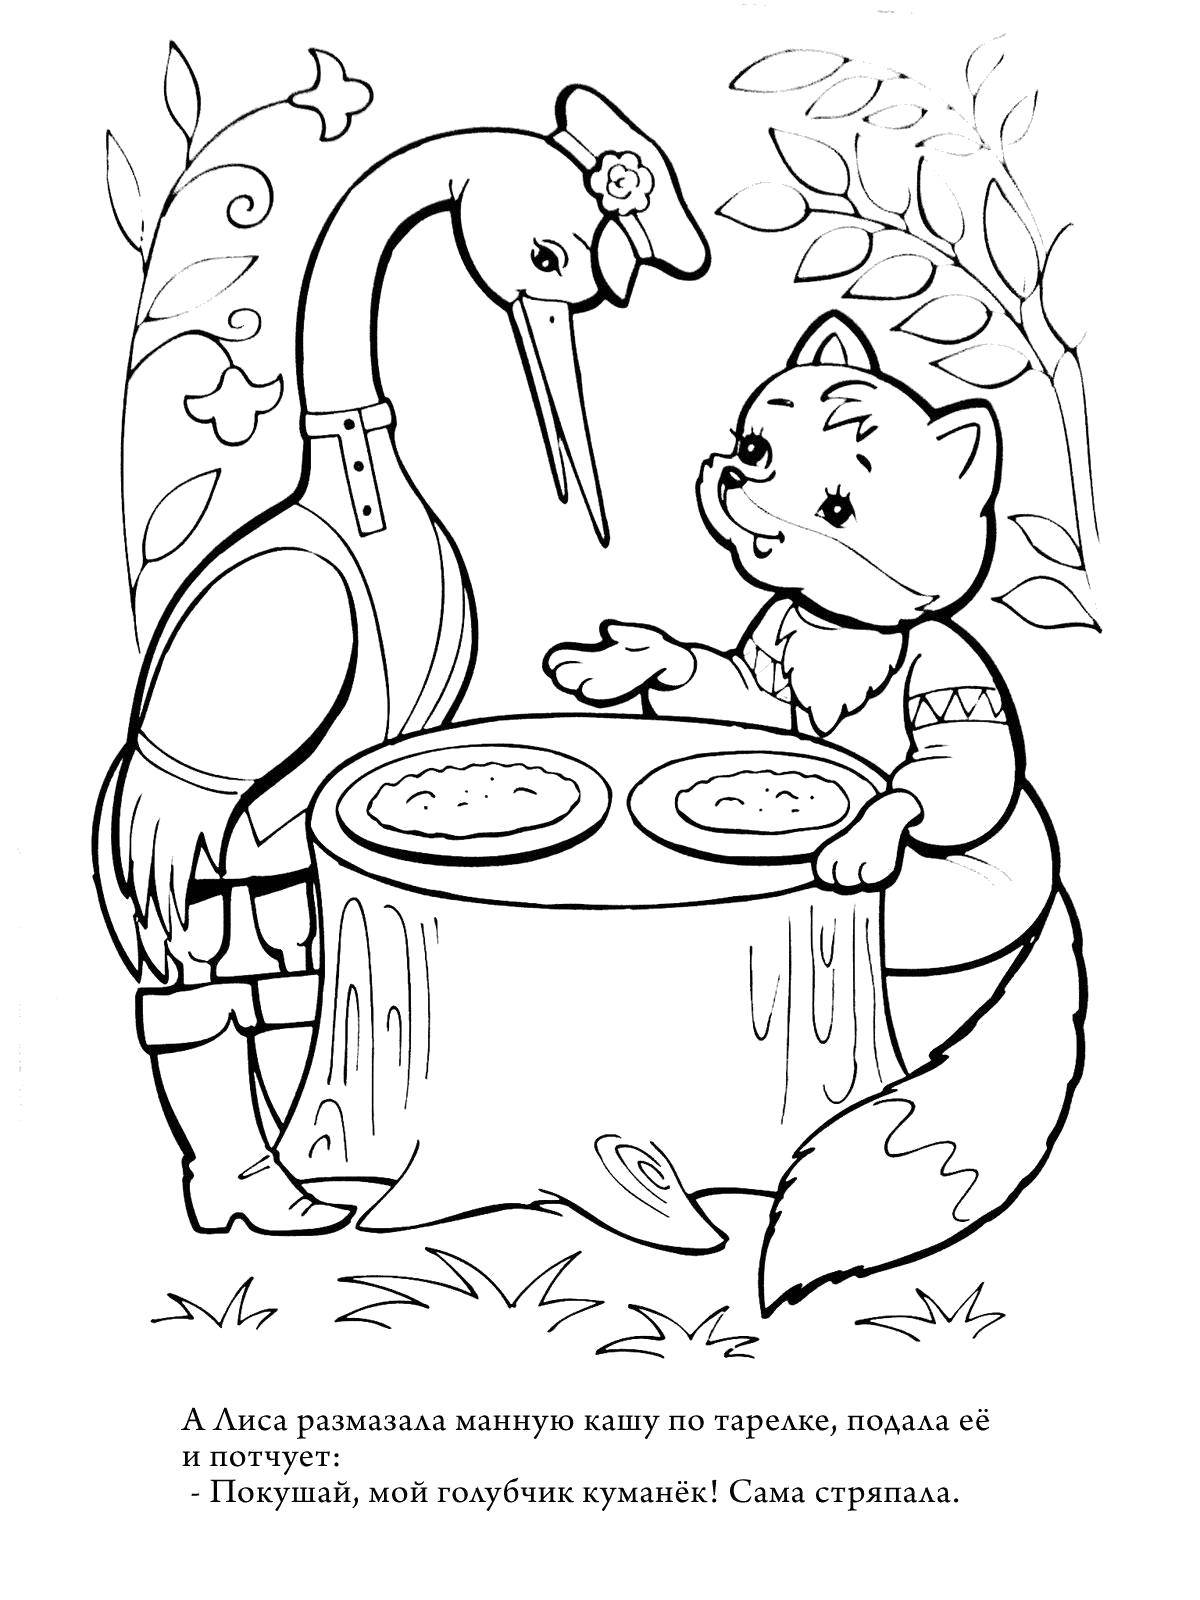 Опис: розмальовки  Лисиця годує журавля. Категорія: Журавель і Чапля. Теги:  Казки, Журавель і Чапля.